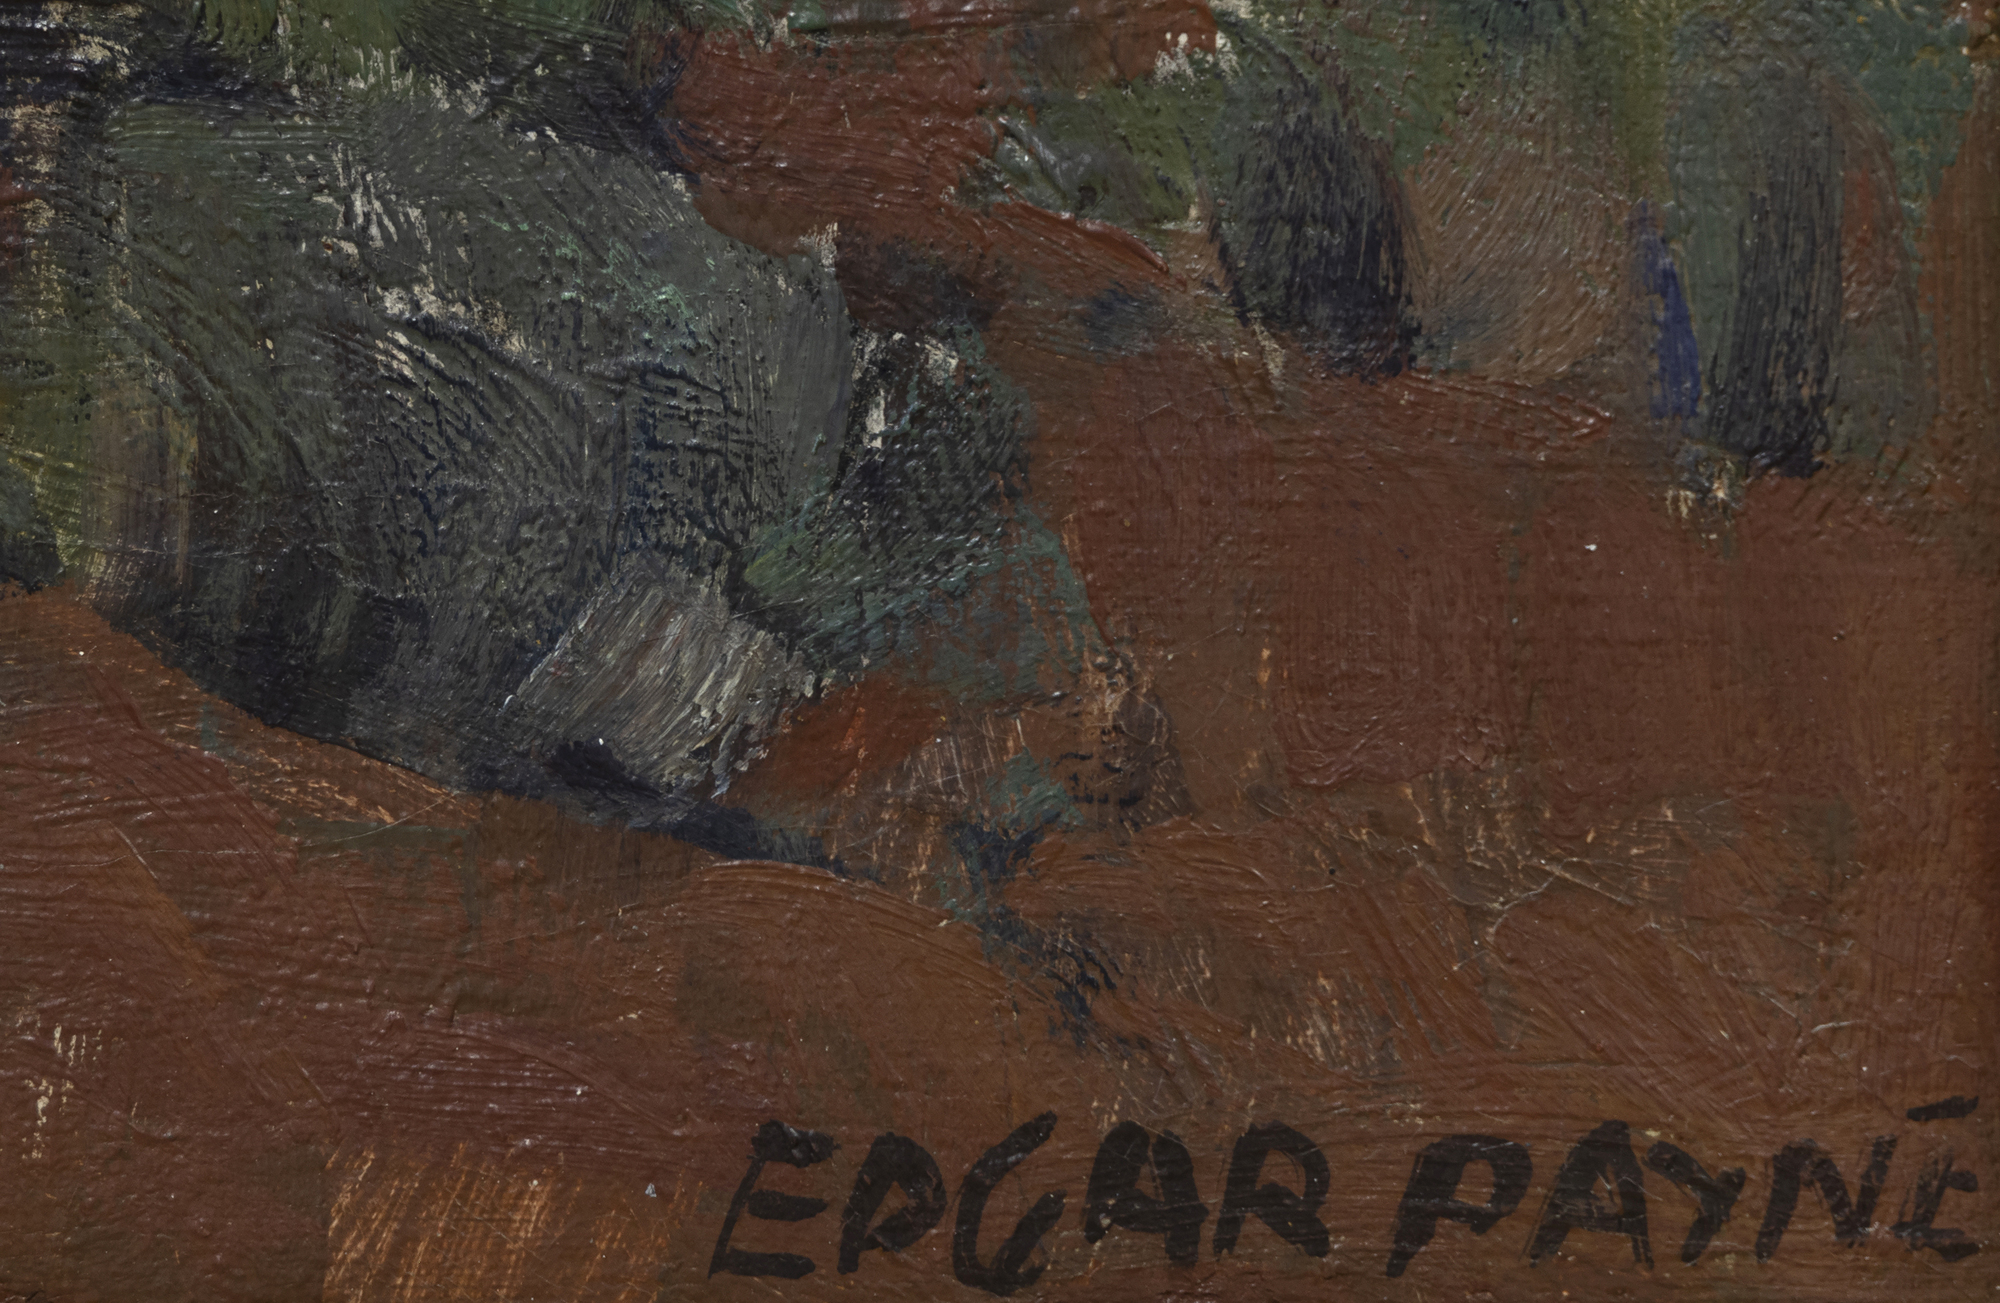 إدغار ألوين باين - نافاجوس في الراحة - زيت على قماش - 19 1/2 × 23 1/2 بوصة.